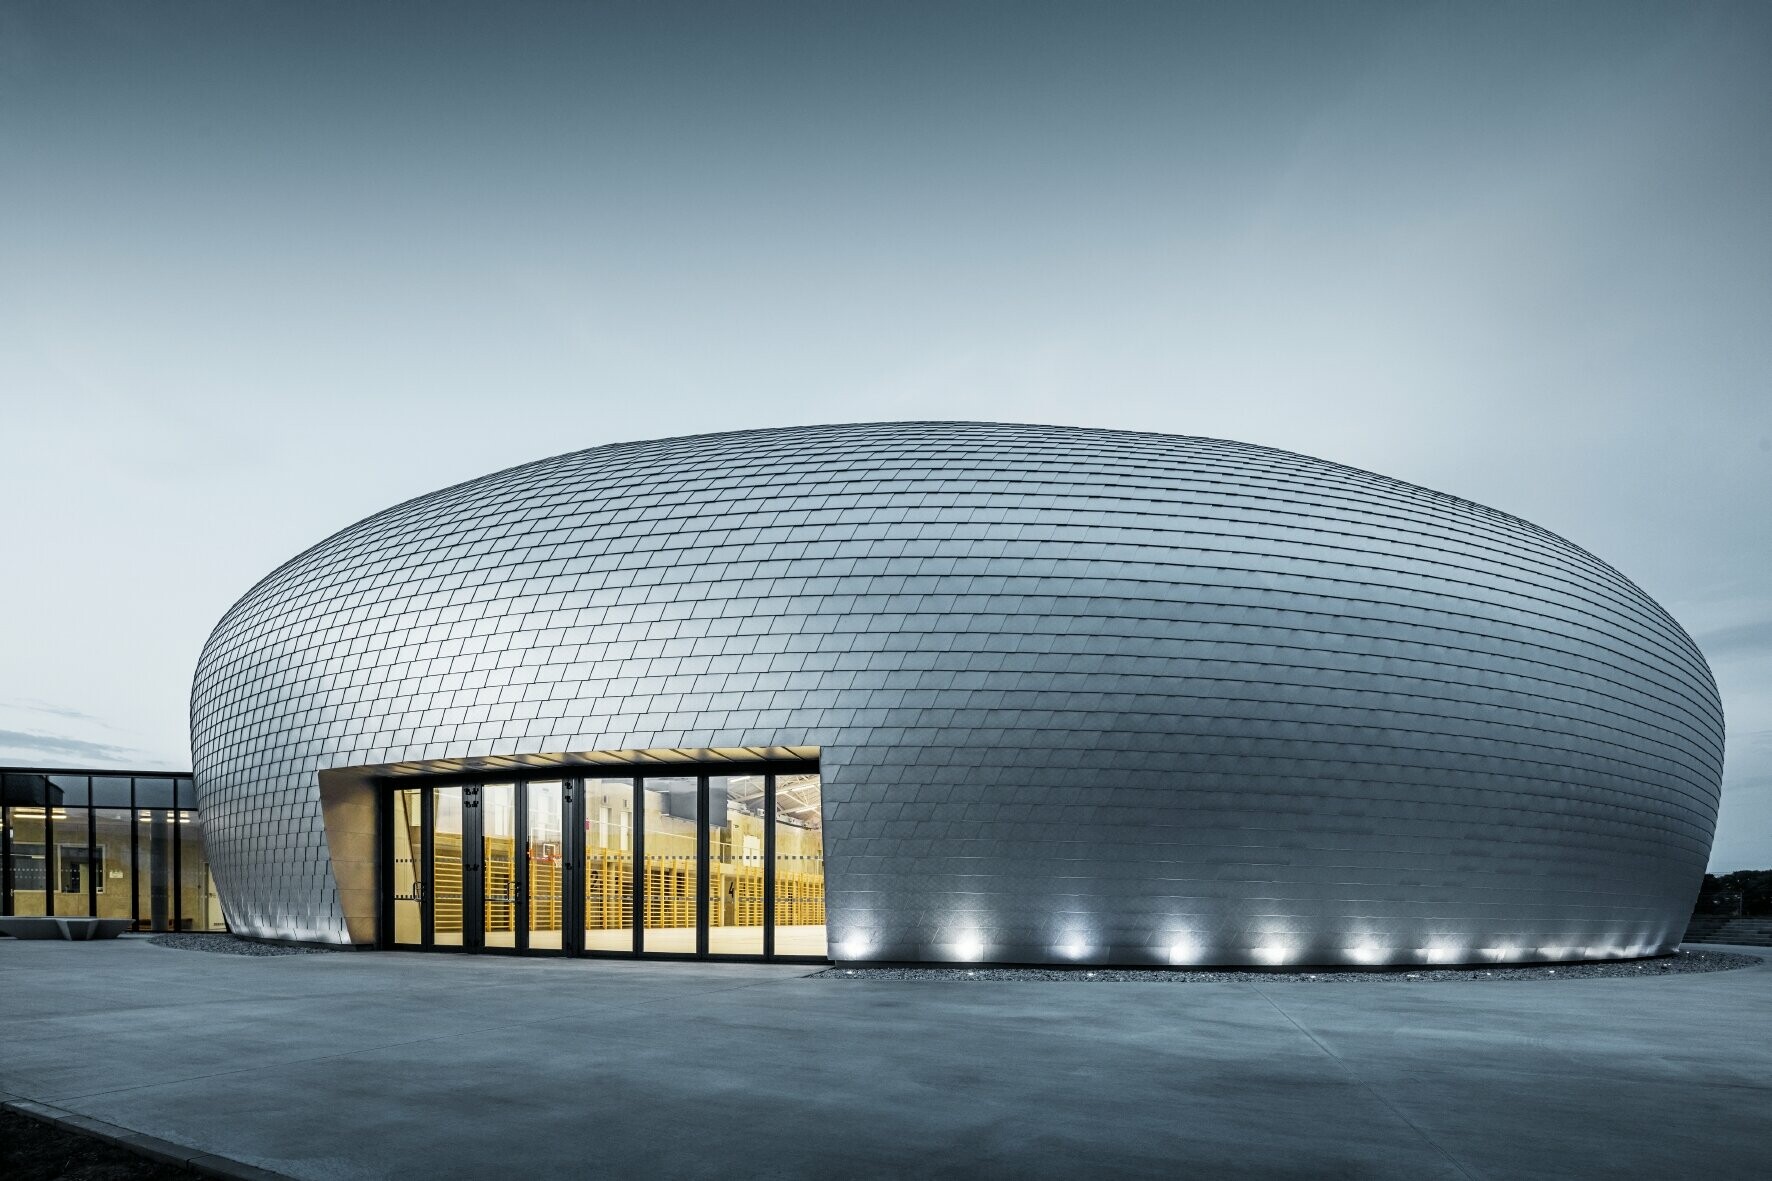 La forme de la salle de sport en République tchèque ressemble à un OVNI - 20 000 bardeaux PREFA aluminium naturel ont été posés